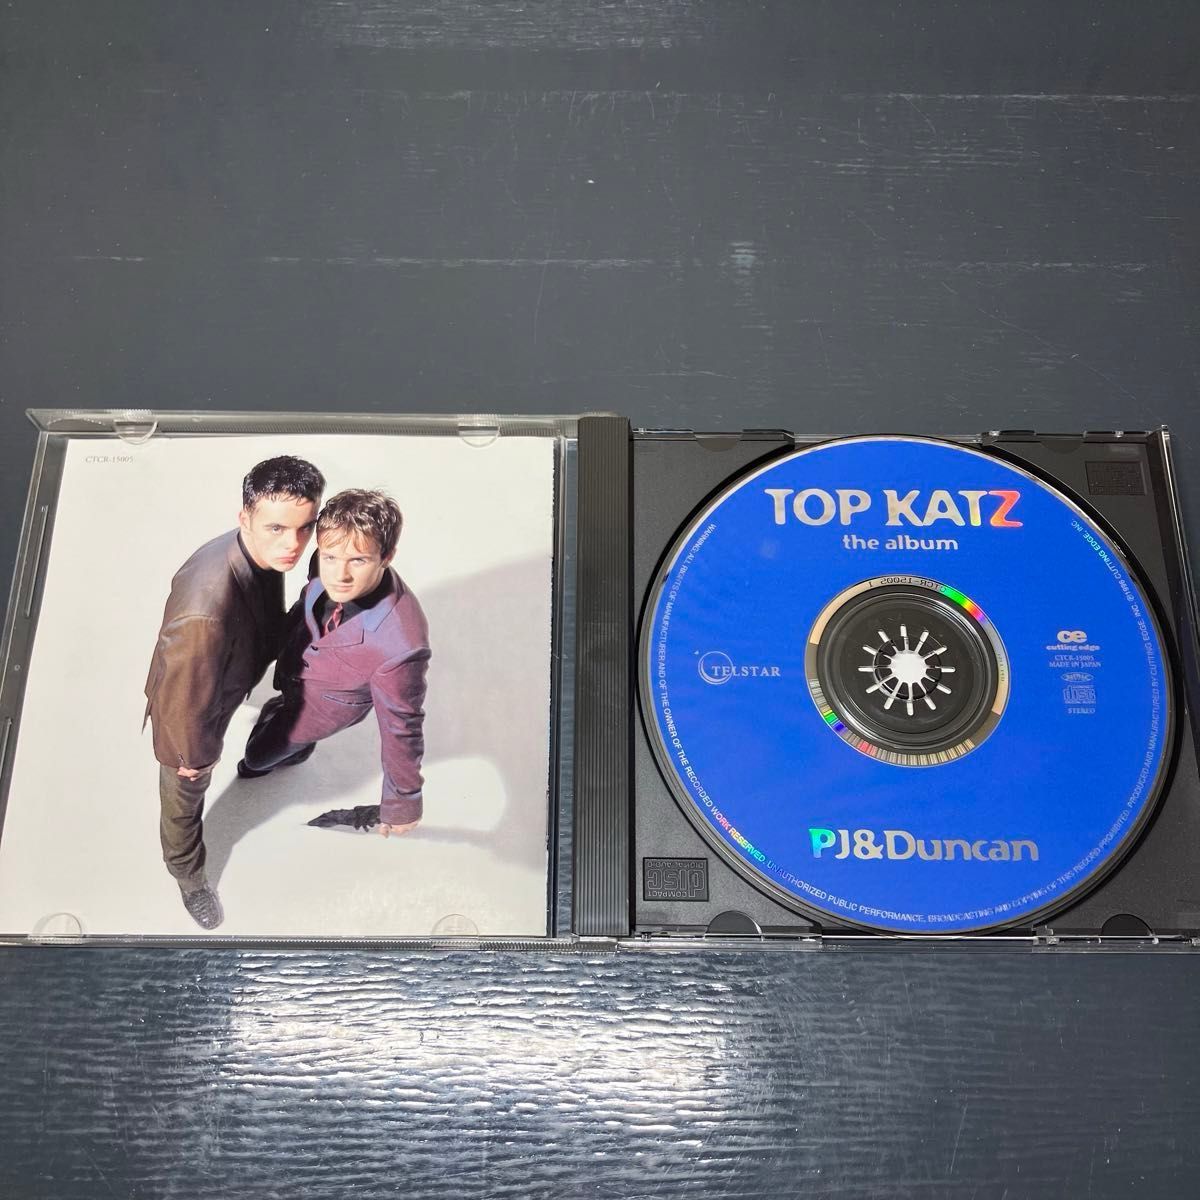 PJ & Duncan / Top Katz 音楽CD 洋楽 UKポップス